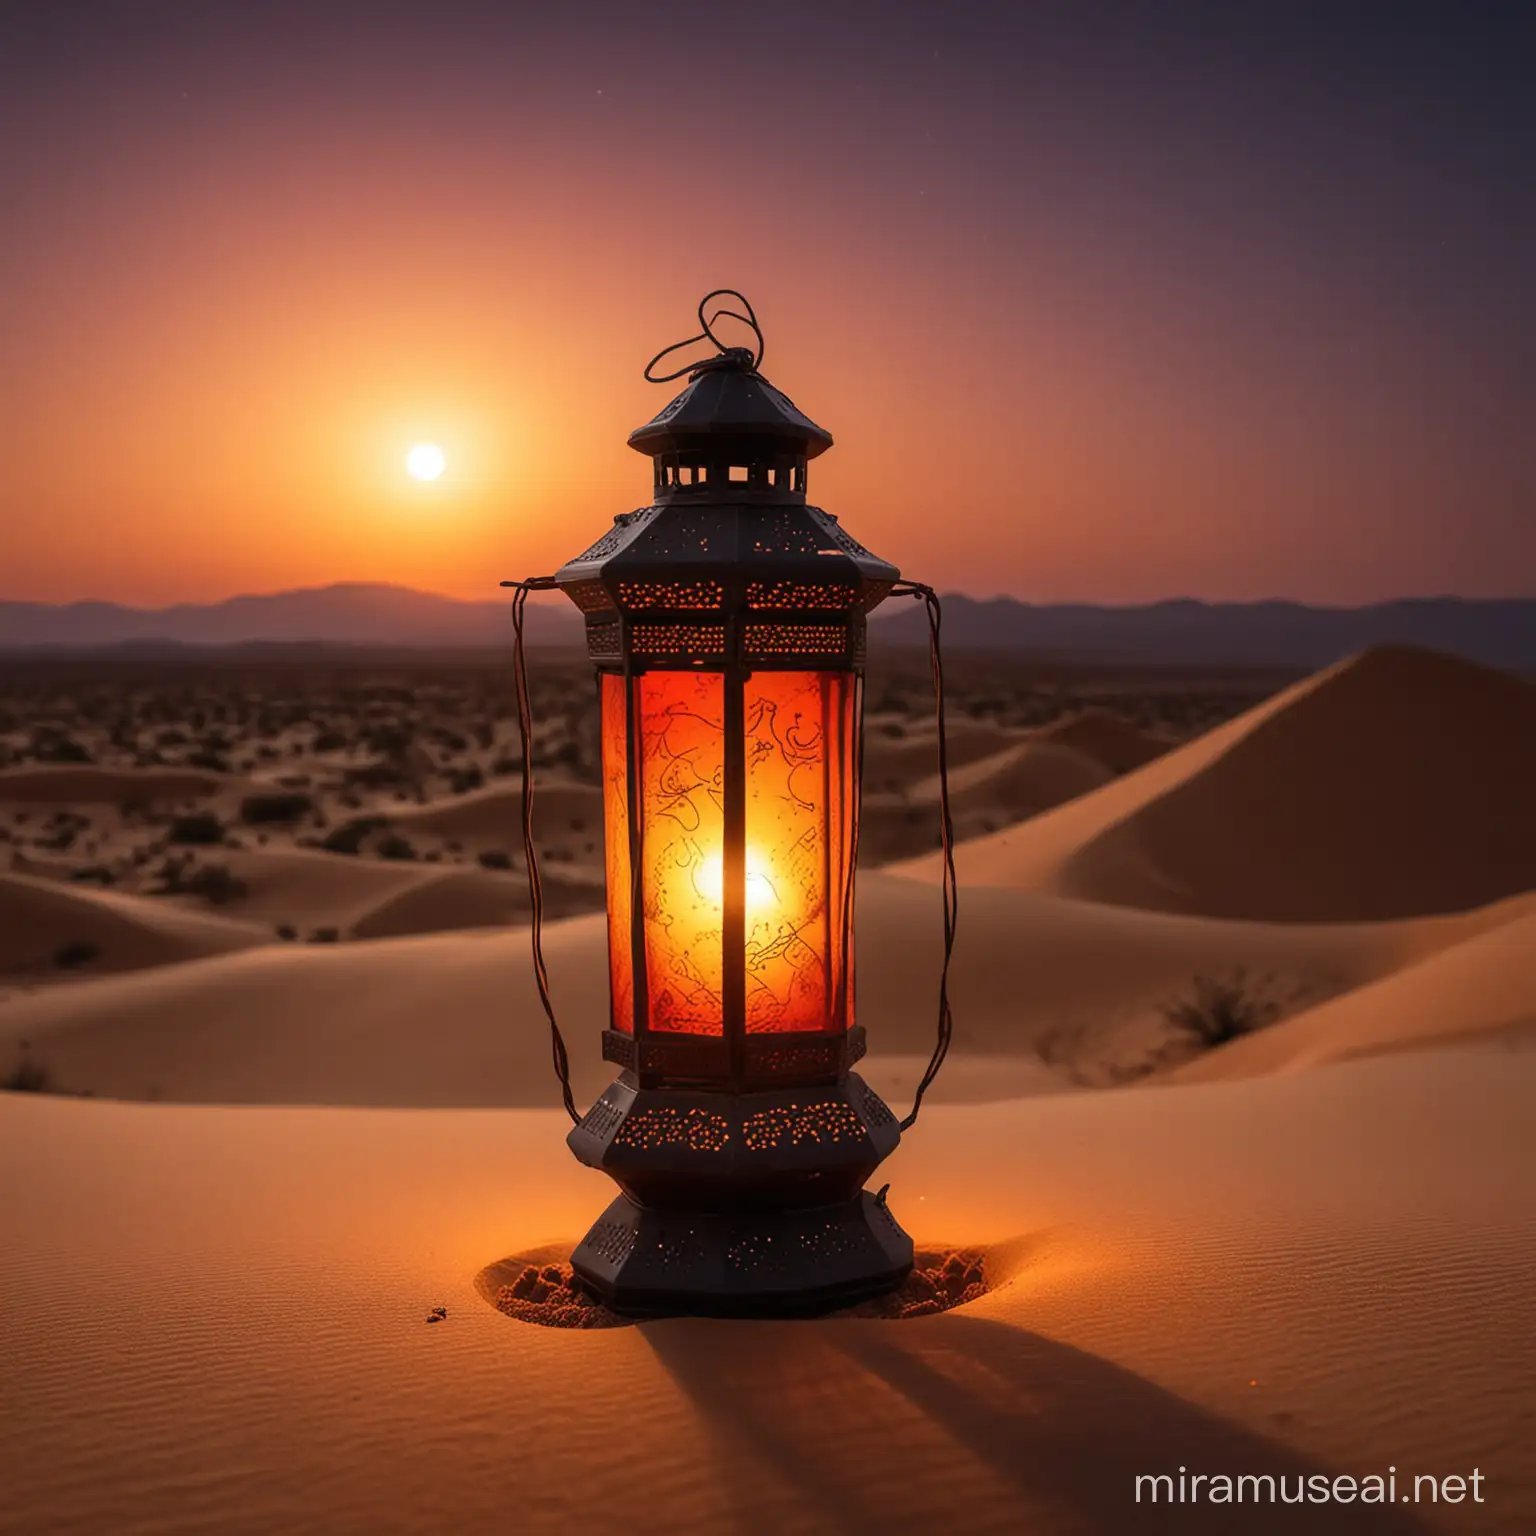 make a manipolation for eid lantern in desert with dark view dark 
sunset glow happy vibes